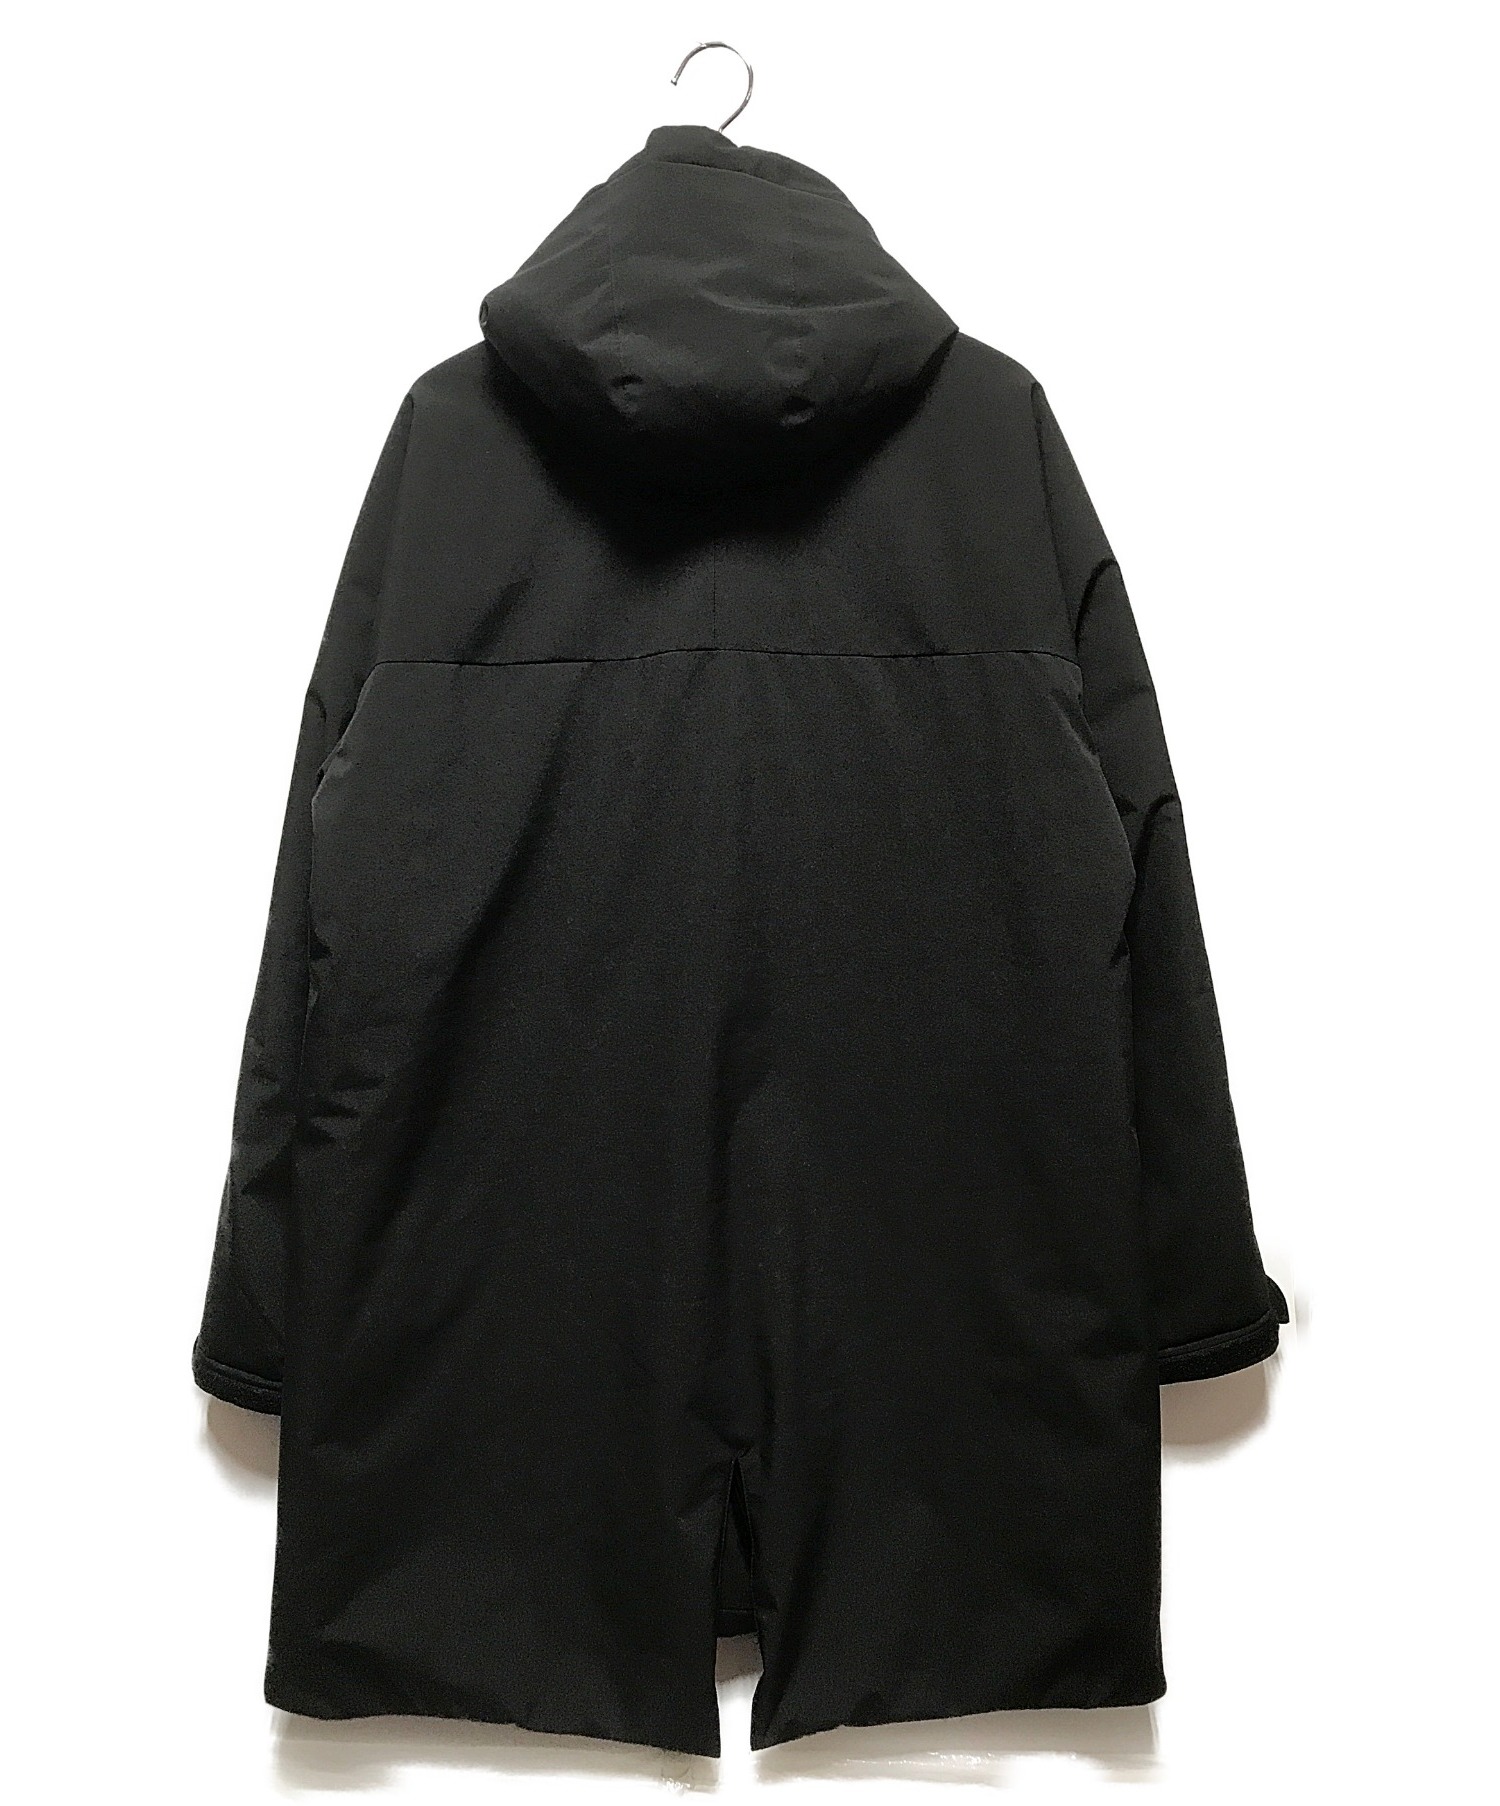 JH junhashimoto (ジェイエイチジュンハシモト) ハイパフォーマンスパディングジャケット ブラック サイズ:Ｍ